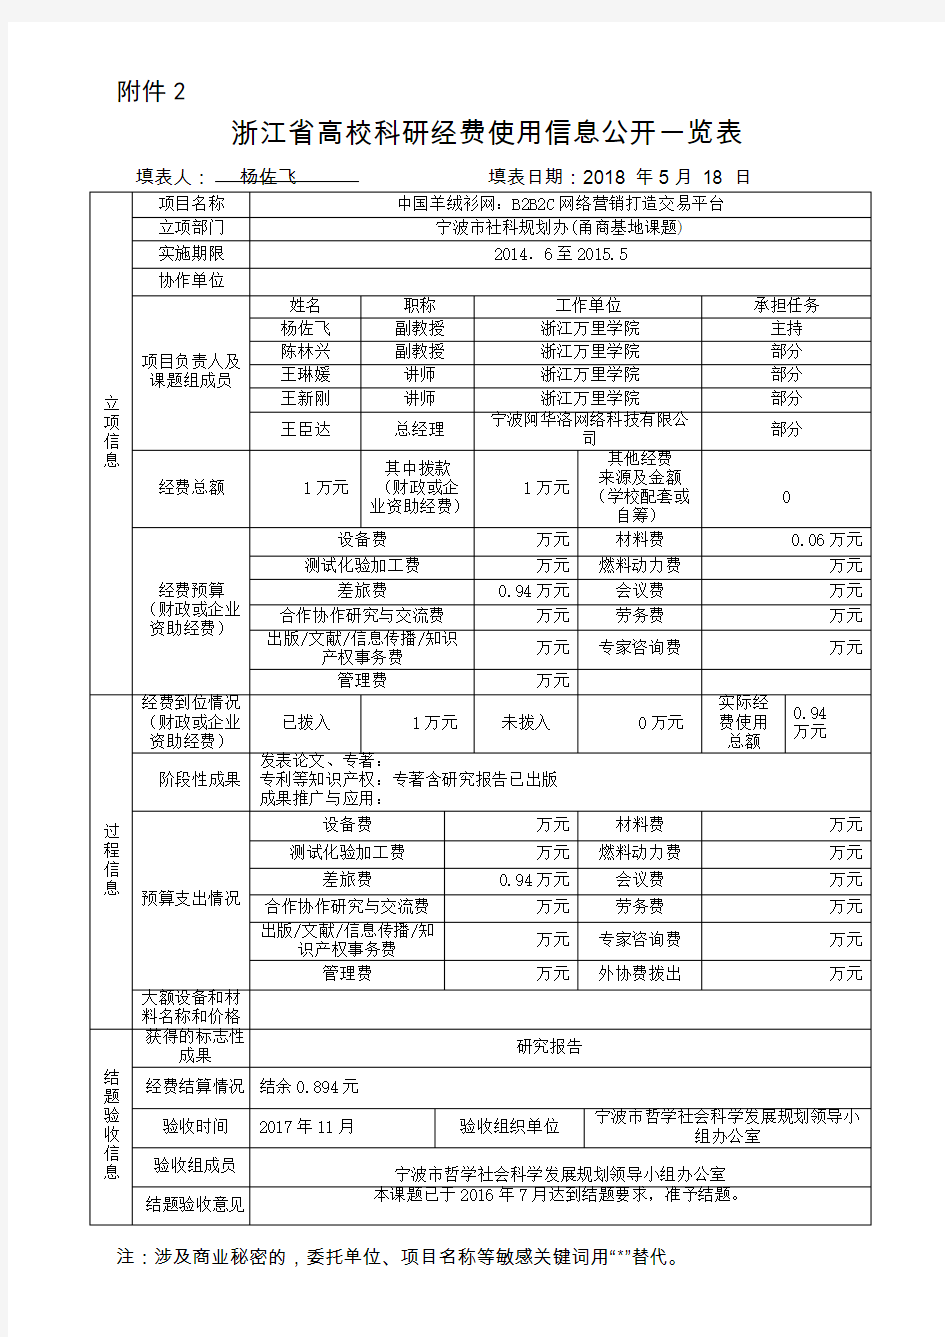 浙江高校科研经费使用信息公开一览表-浙江万里学院科技部